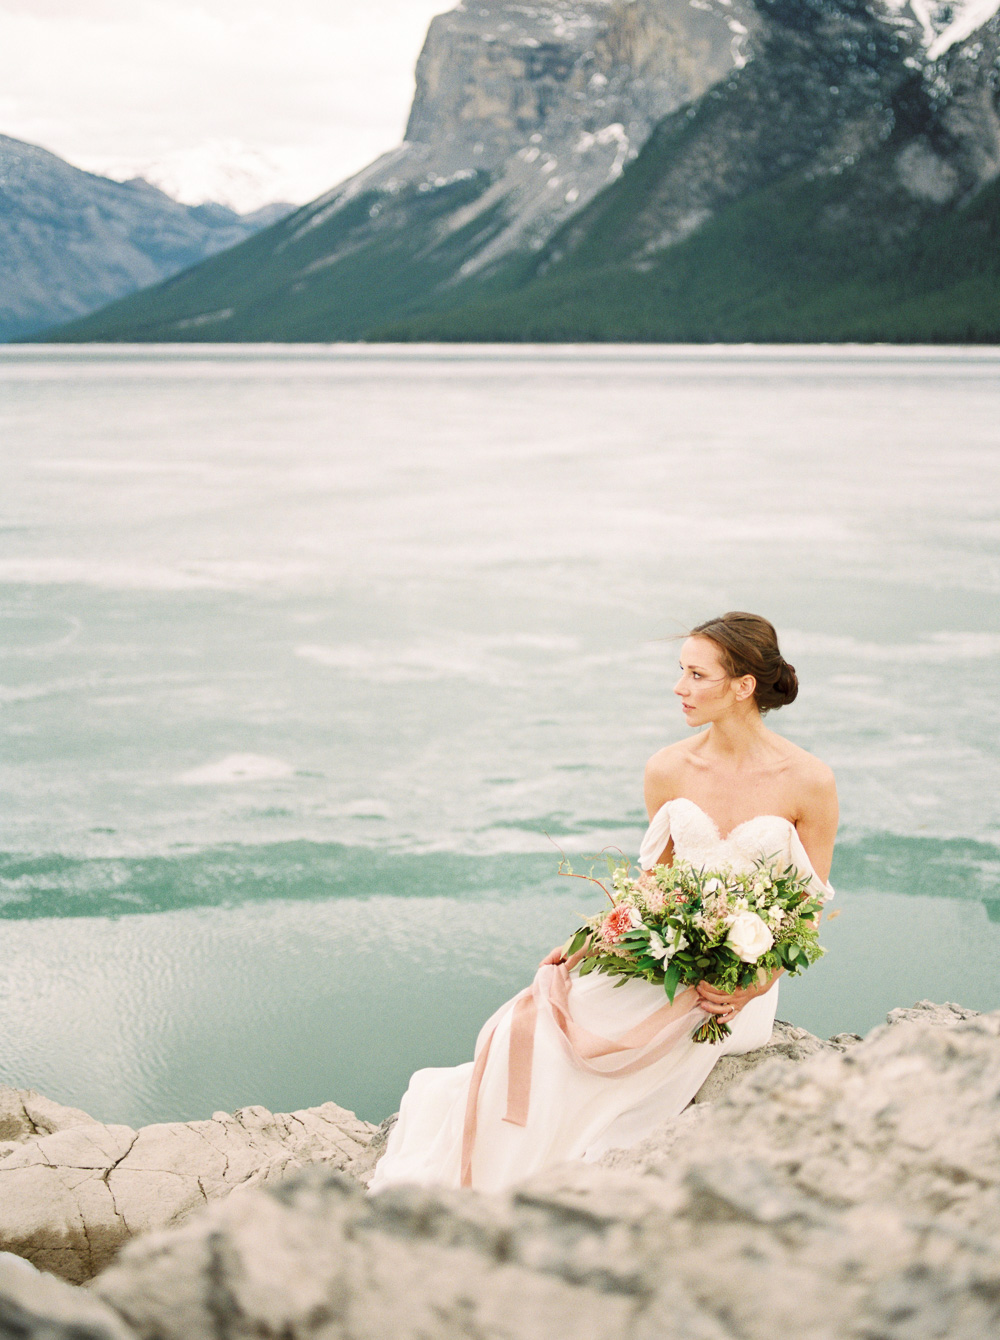 Coral White Wedding Bouquet | Banff Elopement | Sarah Seven Gown | Bridal Portrait | Fine Art Wedding Photographer Esther Funk